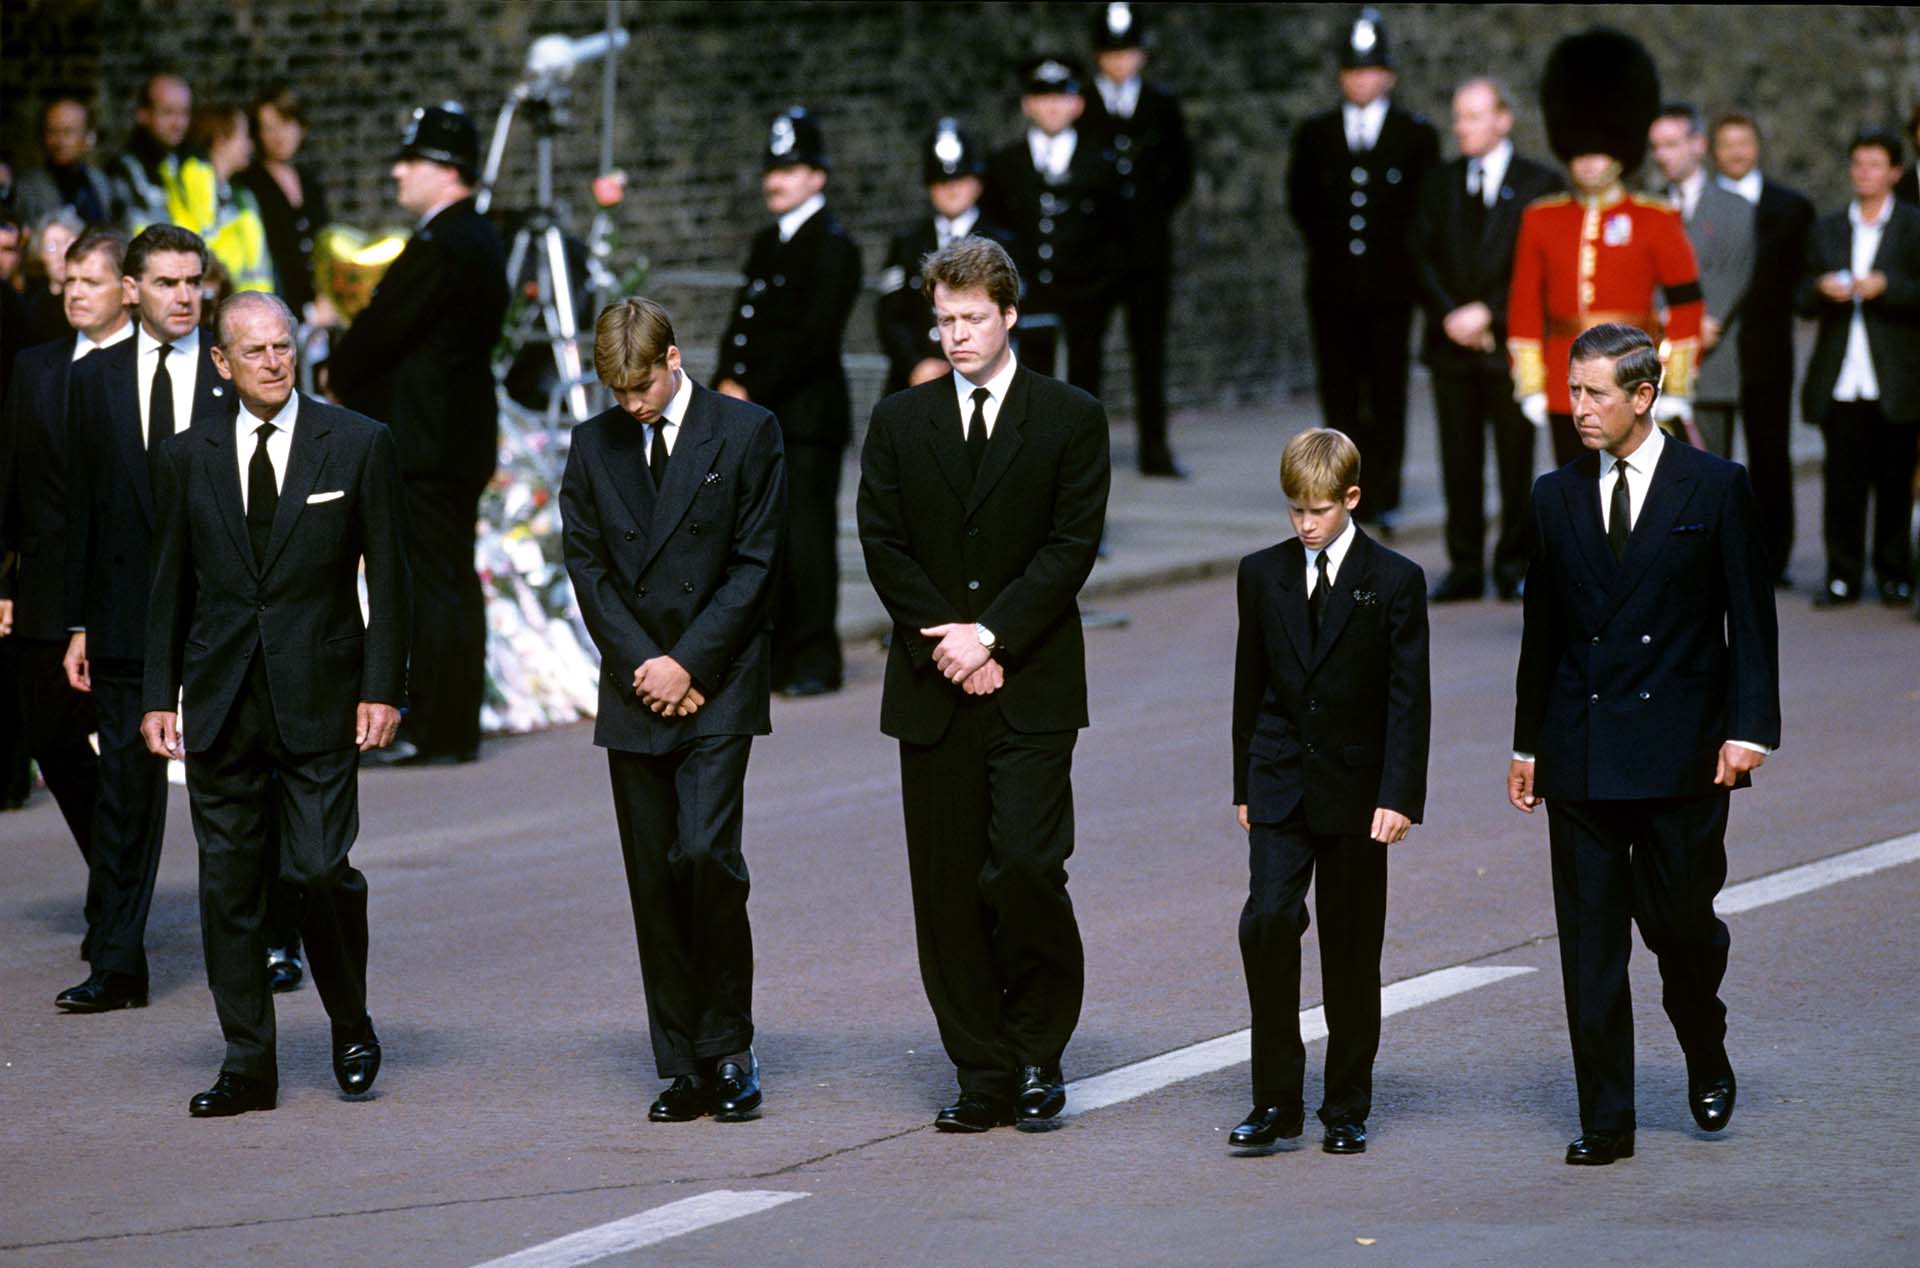 El duque de Edimburgo con sus nietos, William y Harry, y el príncipe Carlos en el funeral de Lady Di, fallecida en un accidente de tránsito en París en 1997